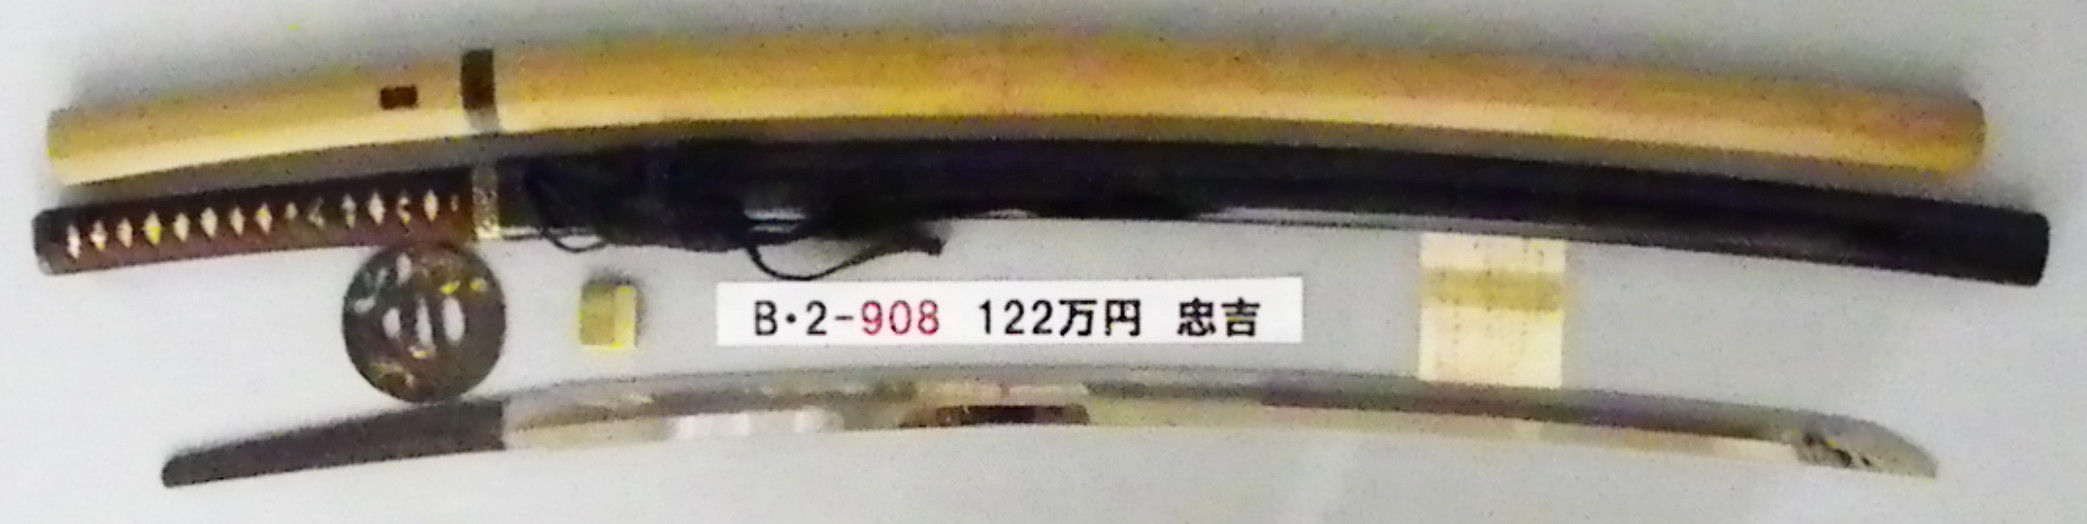 B2908